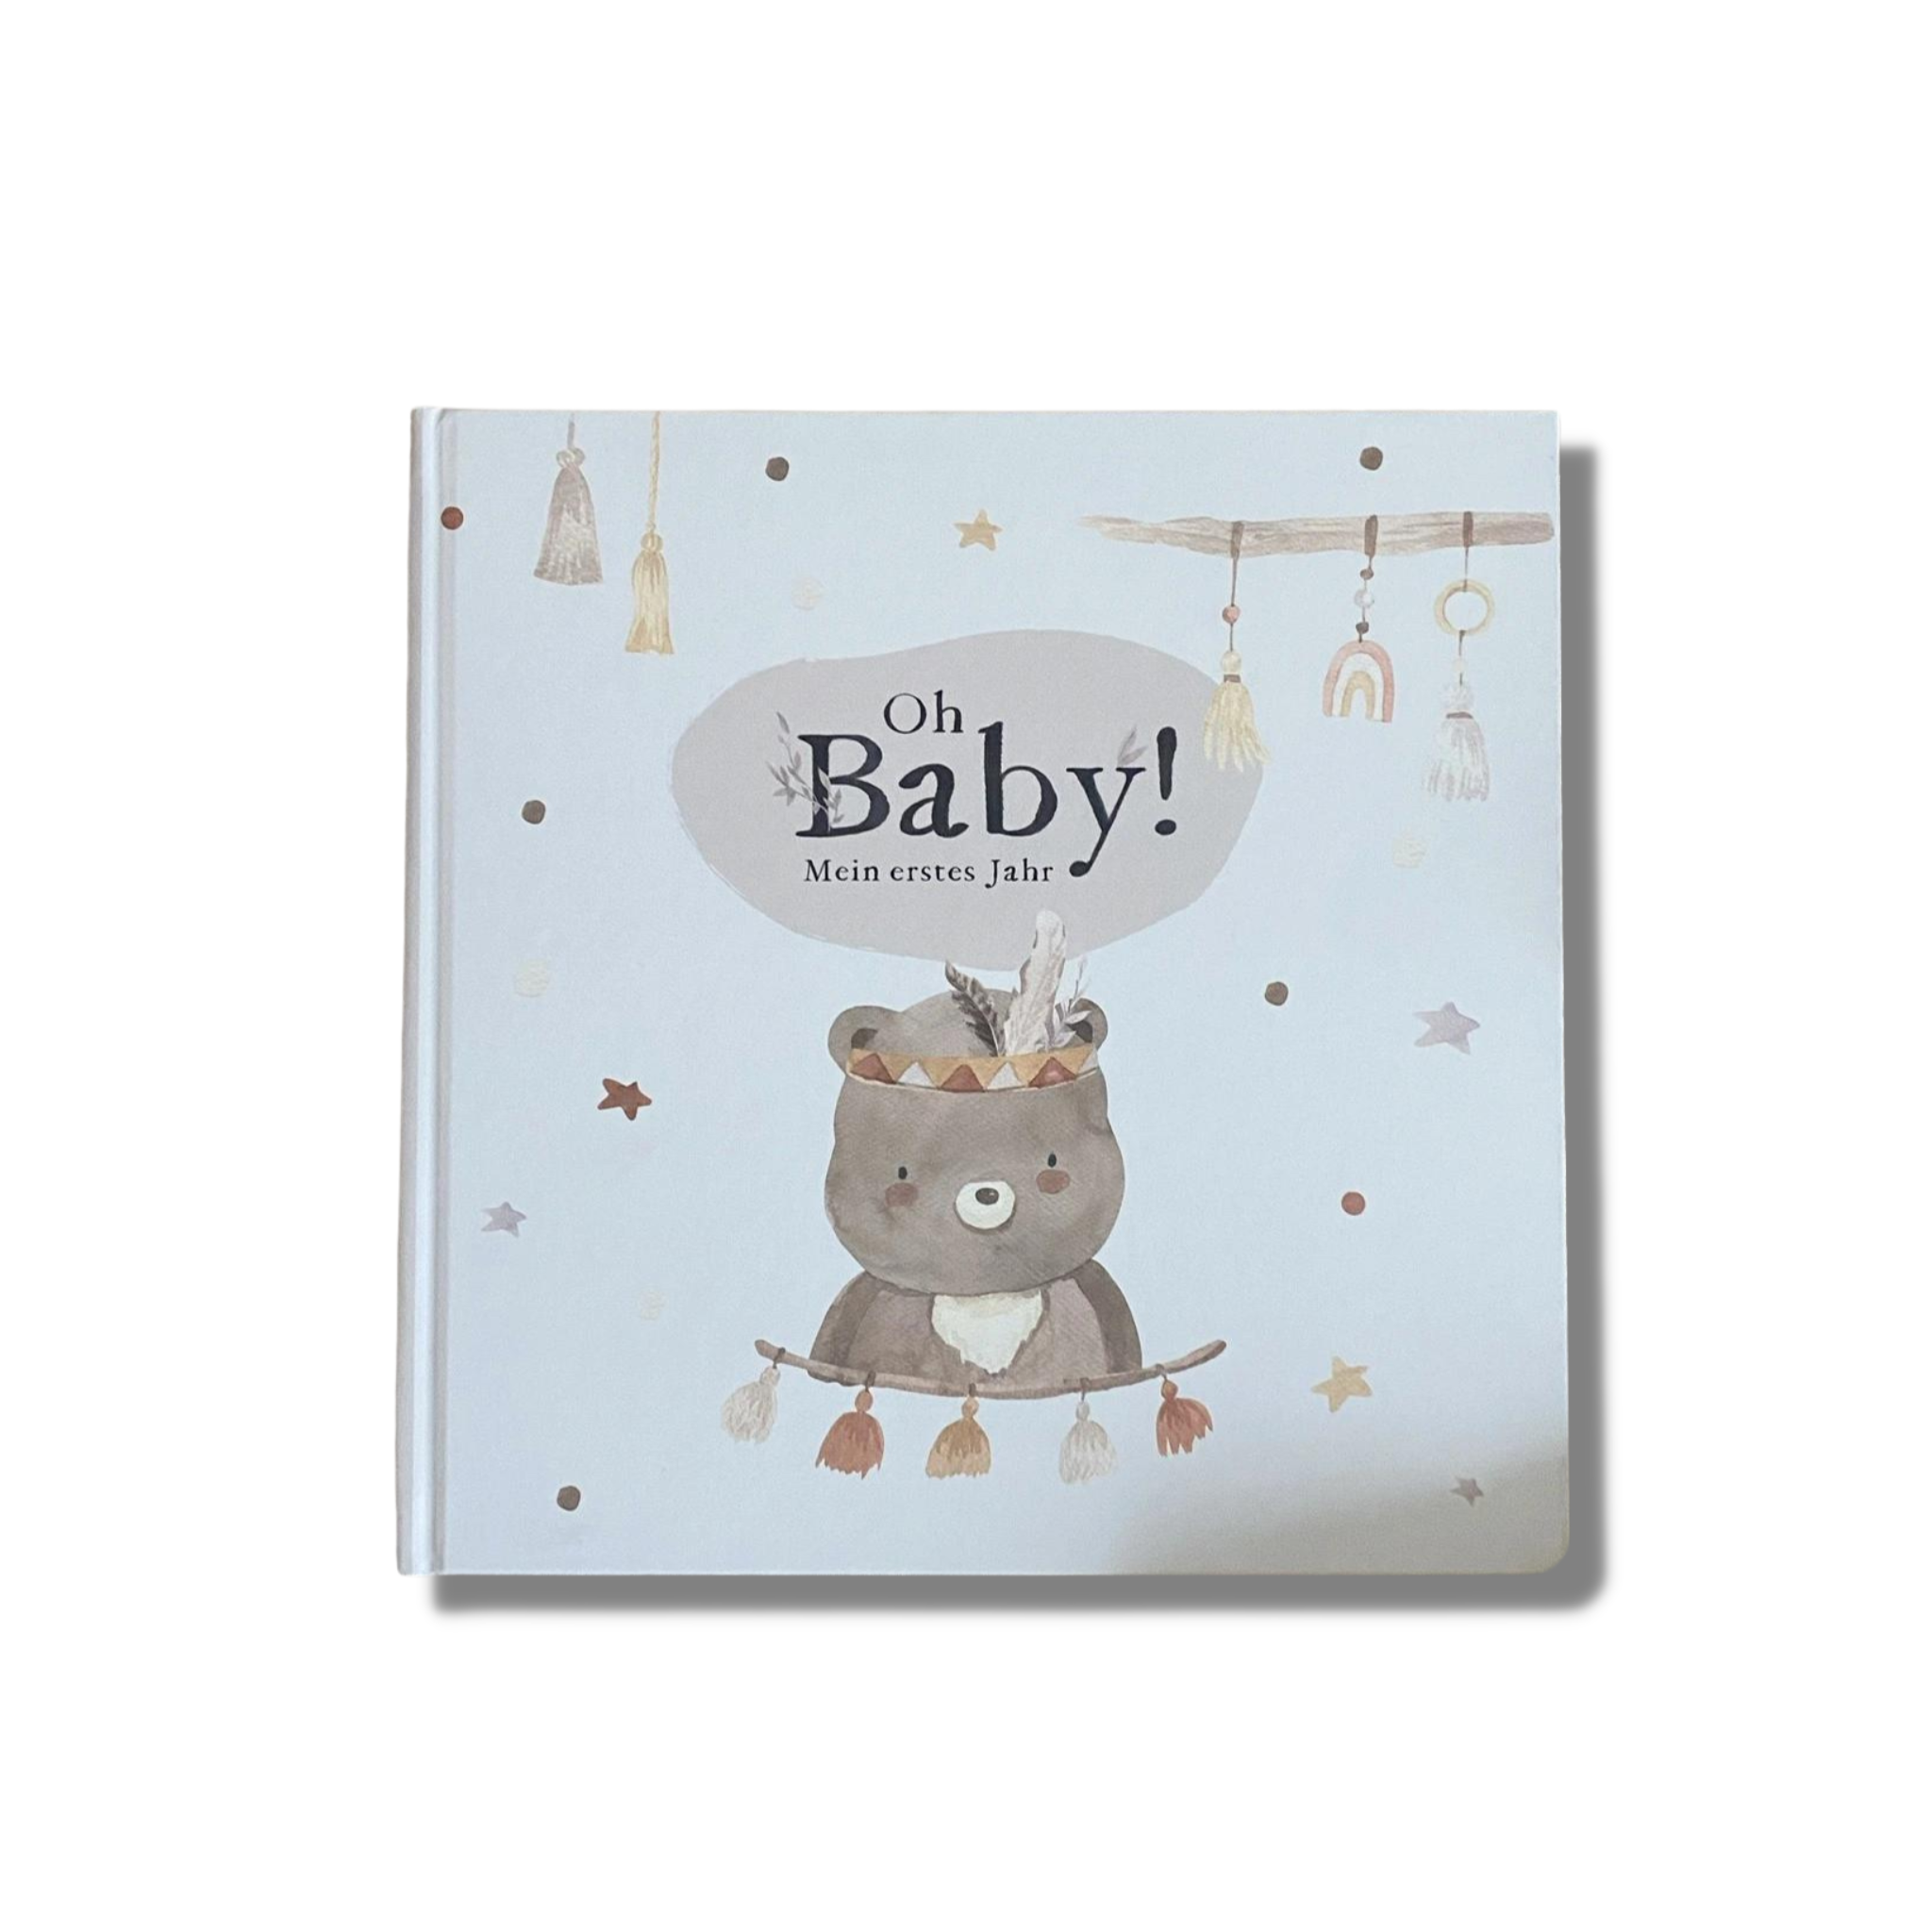 Boho Babybuch "Oh Baby" - perfekt als Geschenkidee zur Geburt